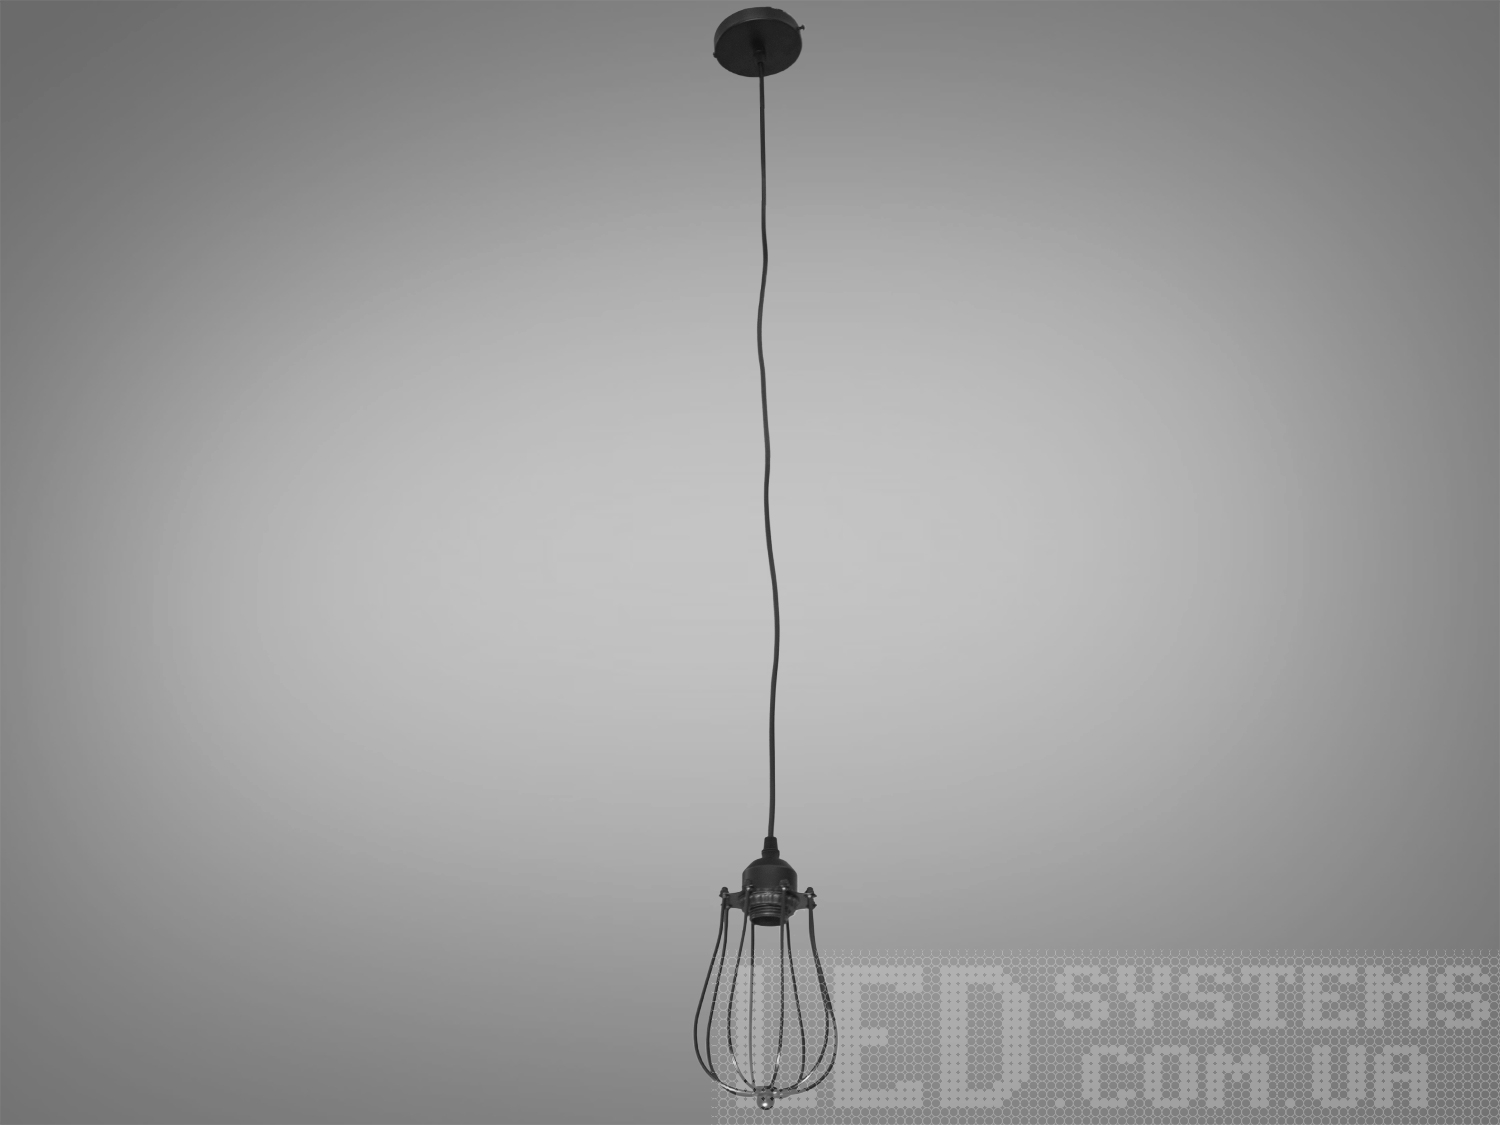 Світильник підвіс в стилі Loft, привносить в простір поєднання промислового та сучасного дизайну. Її унікальність виражена в металевому плафоні, виготовленому зі сплетеного дроту, і теплому світлі лампочки Edison.
Основні Характеристики:
Металевий Плафон із Плетеного Дроту:
Металевий плафон виглядає, ніби він вручну плетений з дроту, створюючи цікавий інтер'єрний акцент та віддзеркалюючи простоту лофт-стилю.
Лампочка Edison:
В центрі плафону розташована лампочка Edison, яка надає освітленню теплоту та неповторний вигляд, підкреслюючи індустріальний характер.
Простий і Ефективний Дизайн:
Люстра має простий, але ефективний дизайн, який дозволяє впроваджувати її в різні стилі інтер'єру.
Металевий Відтінок:
Металевий відтінок плафону може бути вибраний відповідно до загального кольорового рішення приміщення.
Сфера застосування:
Кухня чи Їдальня:
Ідеально підійде для настільного освітлення над кухонним столом чи барною стійкою, додаючи атмосферу теплоти та стилю.
Лофтові Простори:
Лофтові приміщення чи студії, де цінується сучасний індустріальний дизайн.
Кафе або Бари:
У комерційних приміщеннях, таких як кафе або бари, де стиль лофт завжди в тренді.
Творчі Робочі Простори:
В офісах чи творчих просторах (арт-простори, коворкінги, квеструми, фото-студії  та інш., де важливий естетичний дизайн і функціональність.
Цей світильник в стилі Loft створює не лише практичне світло, але і виражає тепло та стиль, вносячи унікальний шарм в будь-яке приміщення.
Лампочка в комплект не входить.